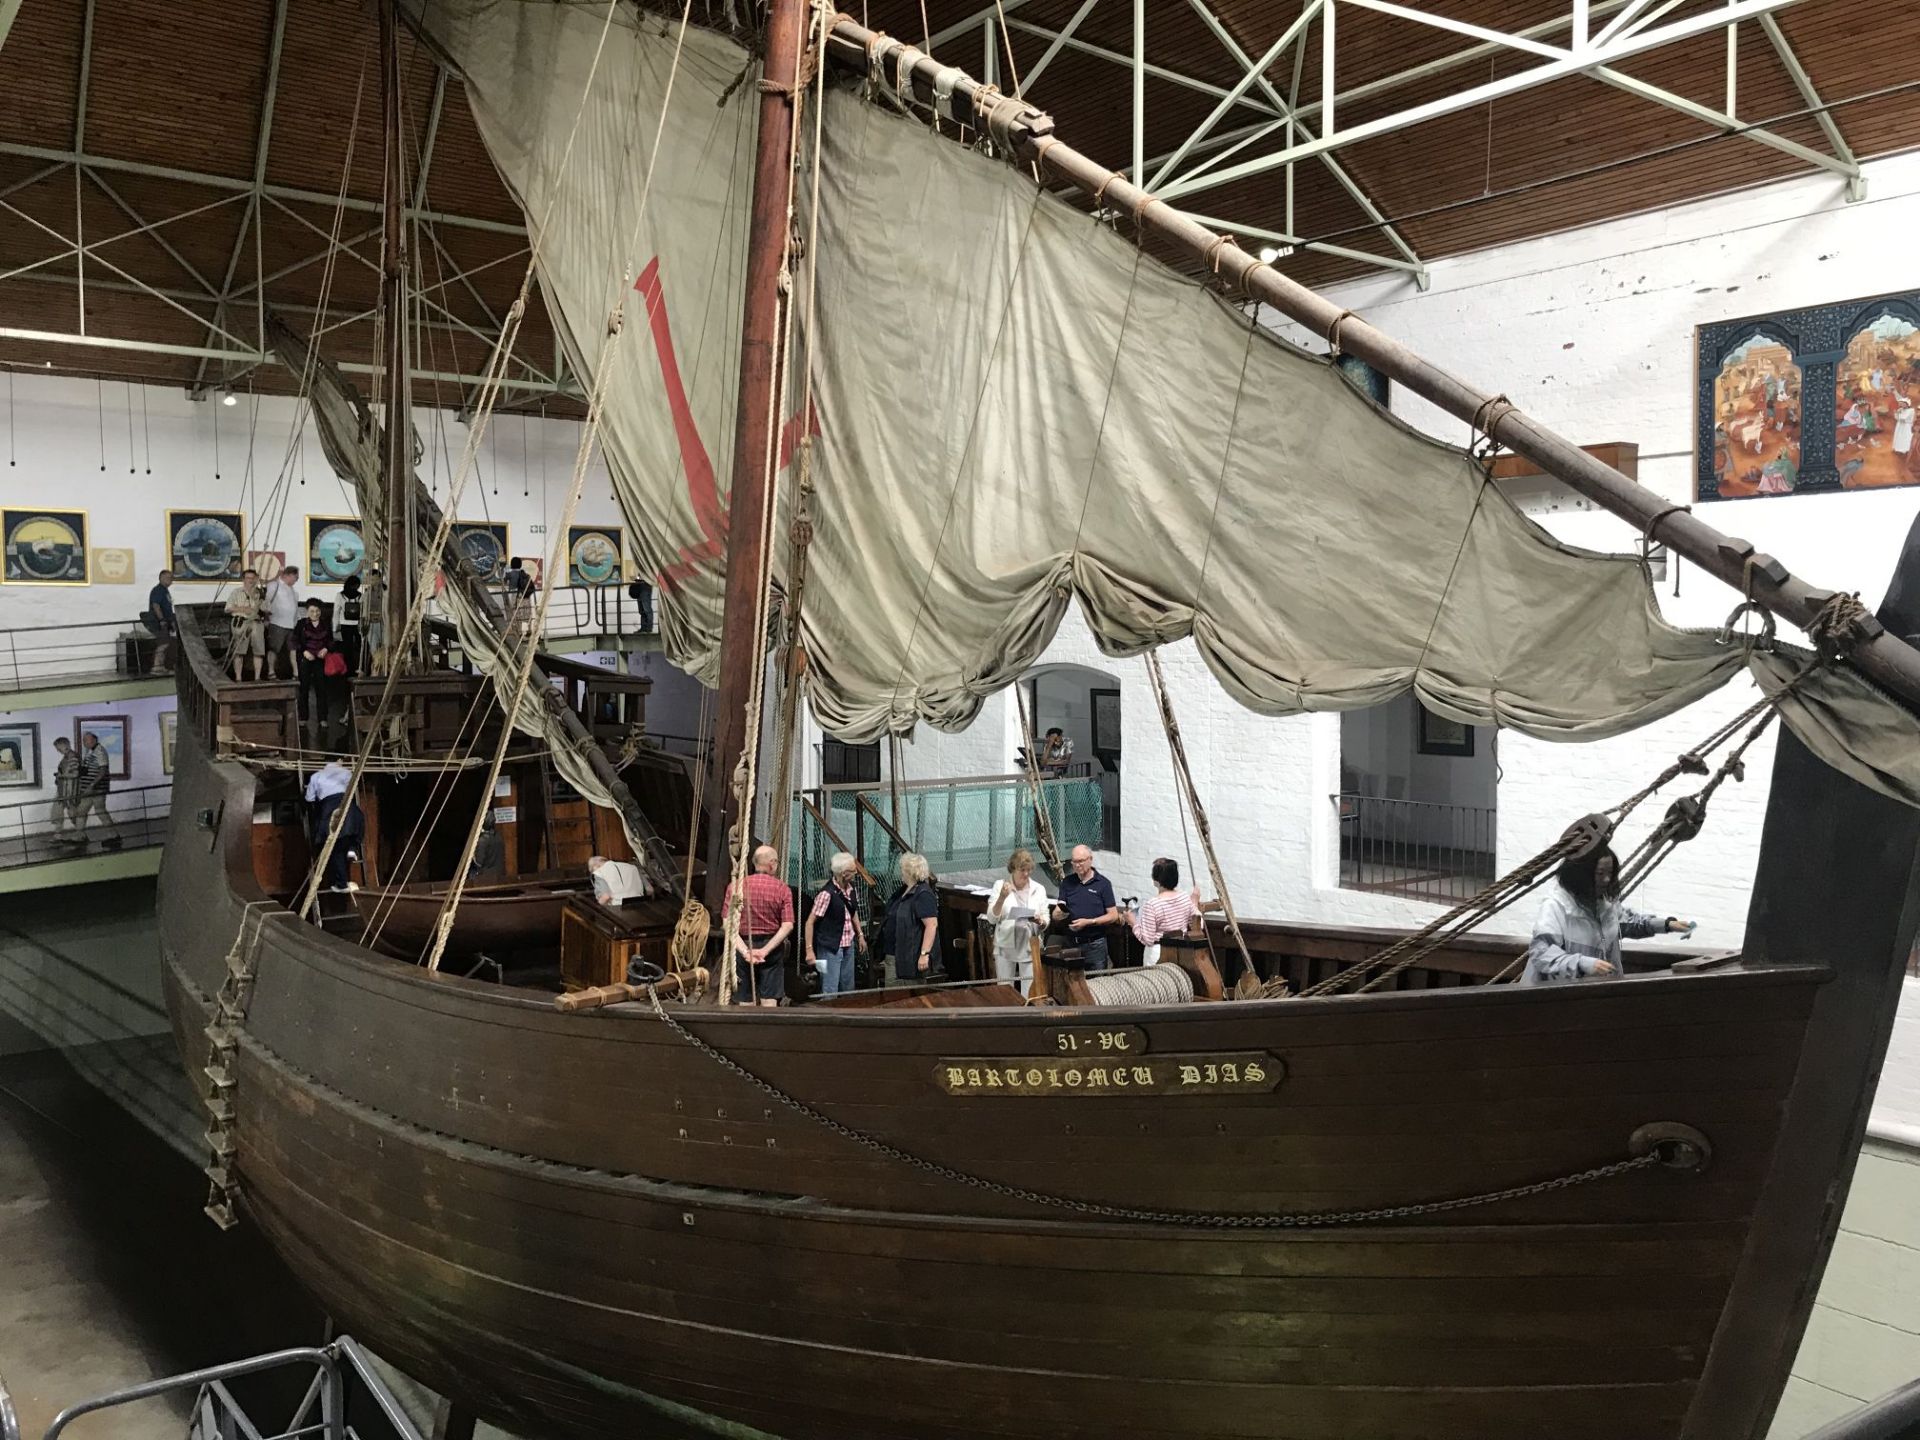 迪亚斯航海博物馆  在南非的行程中，有一个航海博物馆非常吸引我，我们能在这里发现南非的由来。南非是葡